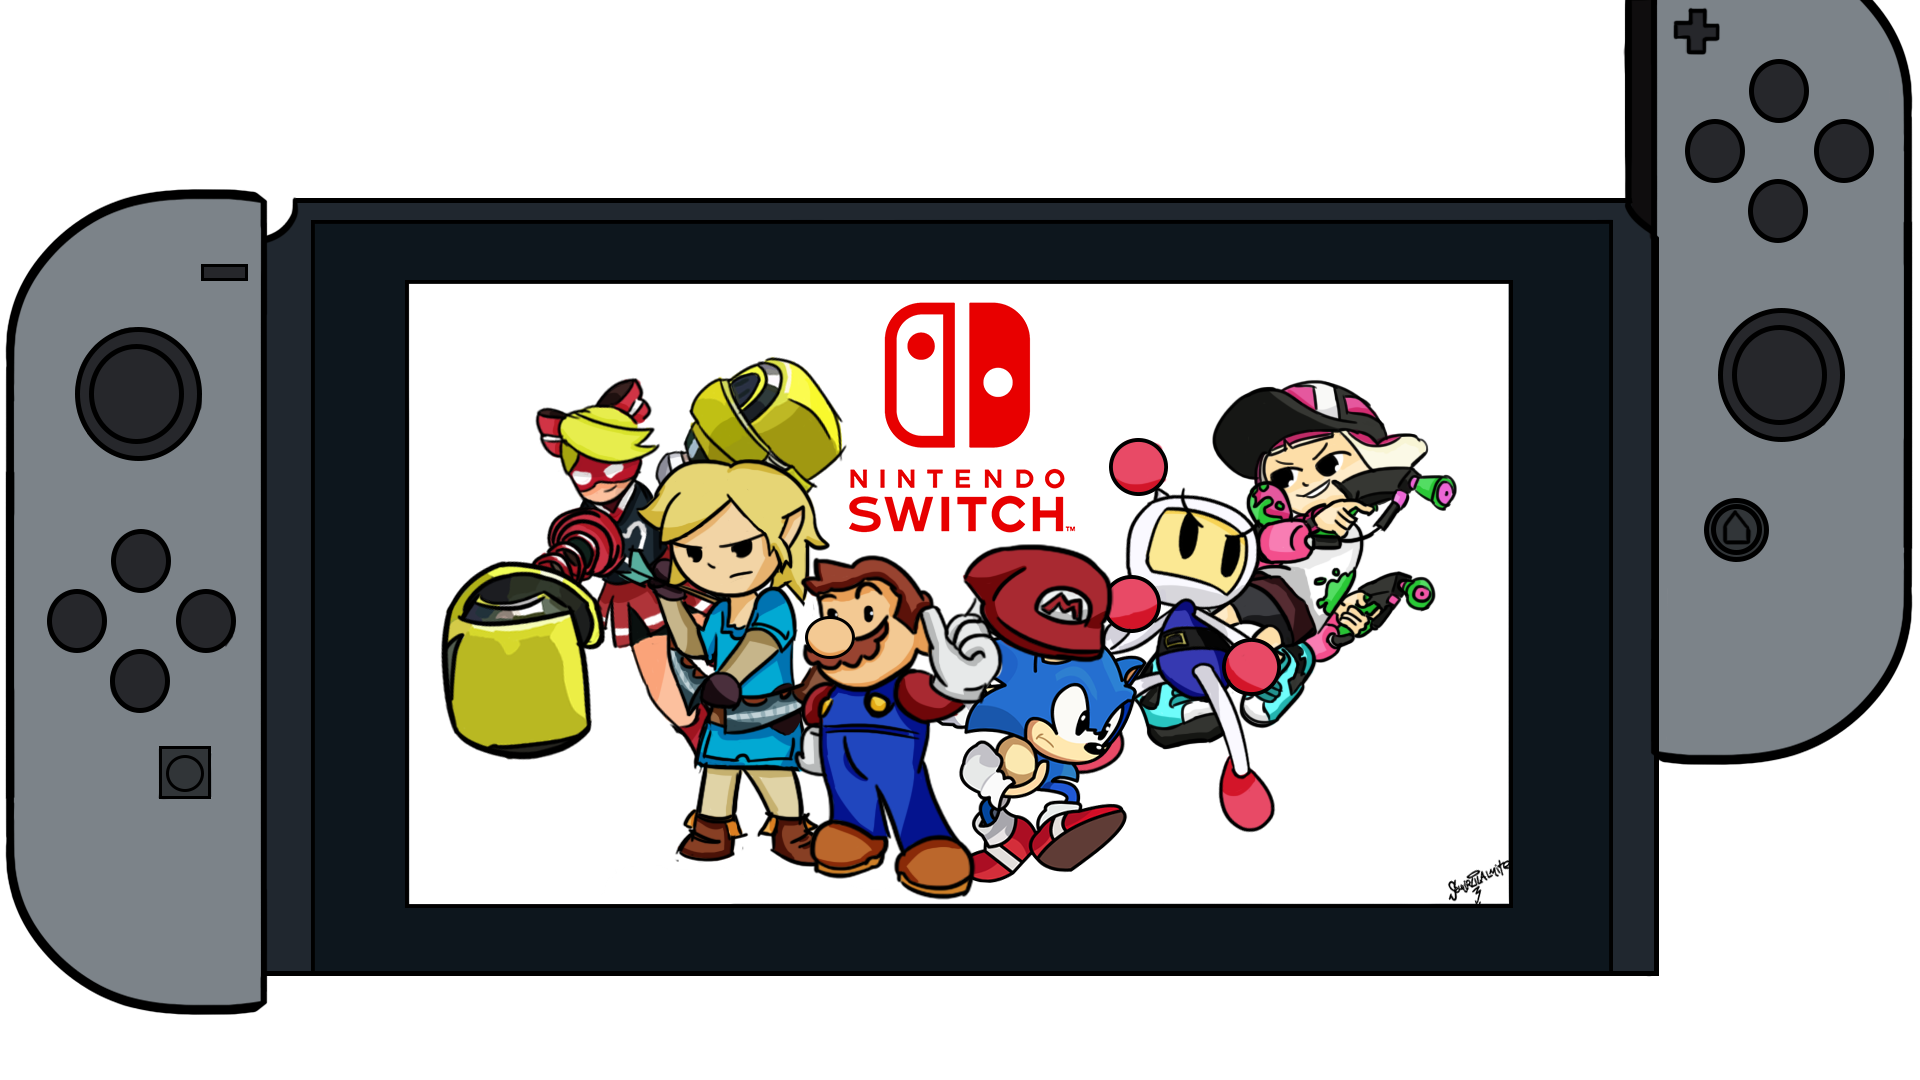 Приставка Нинтендо свитч. Игровая приставка Нинтендо свитч. Nintendo Switch игры для Nintendo Switch. Изображение Нинтендо свитч.